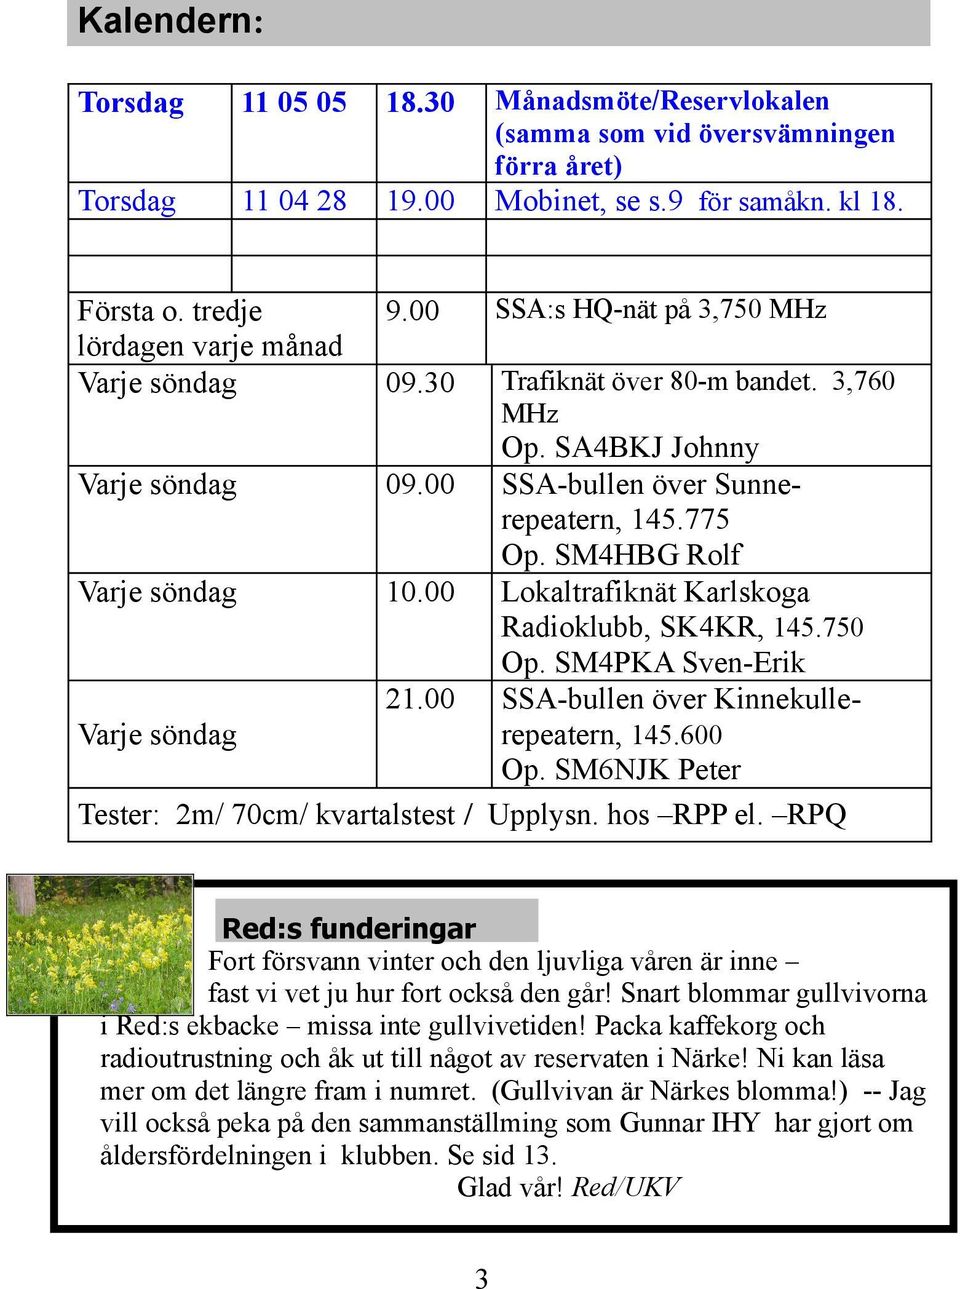 00 Lokaltrafiknät Karlskoga Radioklubb, SK4KR, 145.750 Op. SM4PKA Sven-Erik 21.00 SSA-bullen över KinnekulleVarje söndag repeatern, 145.600 Op. SM6NJK Peter Tester: 2m/ 70cm/ kvartalstest / Upplysn.